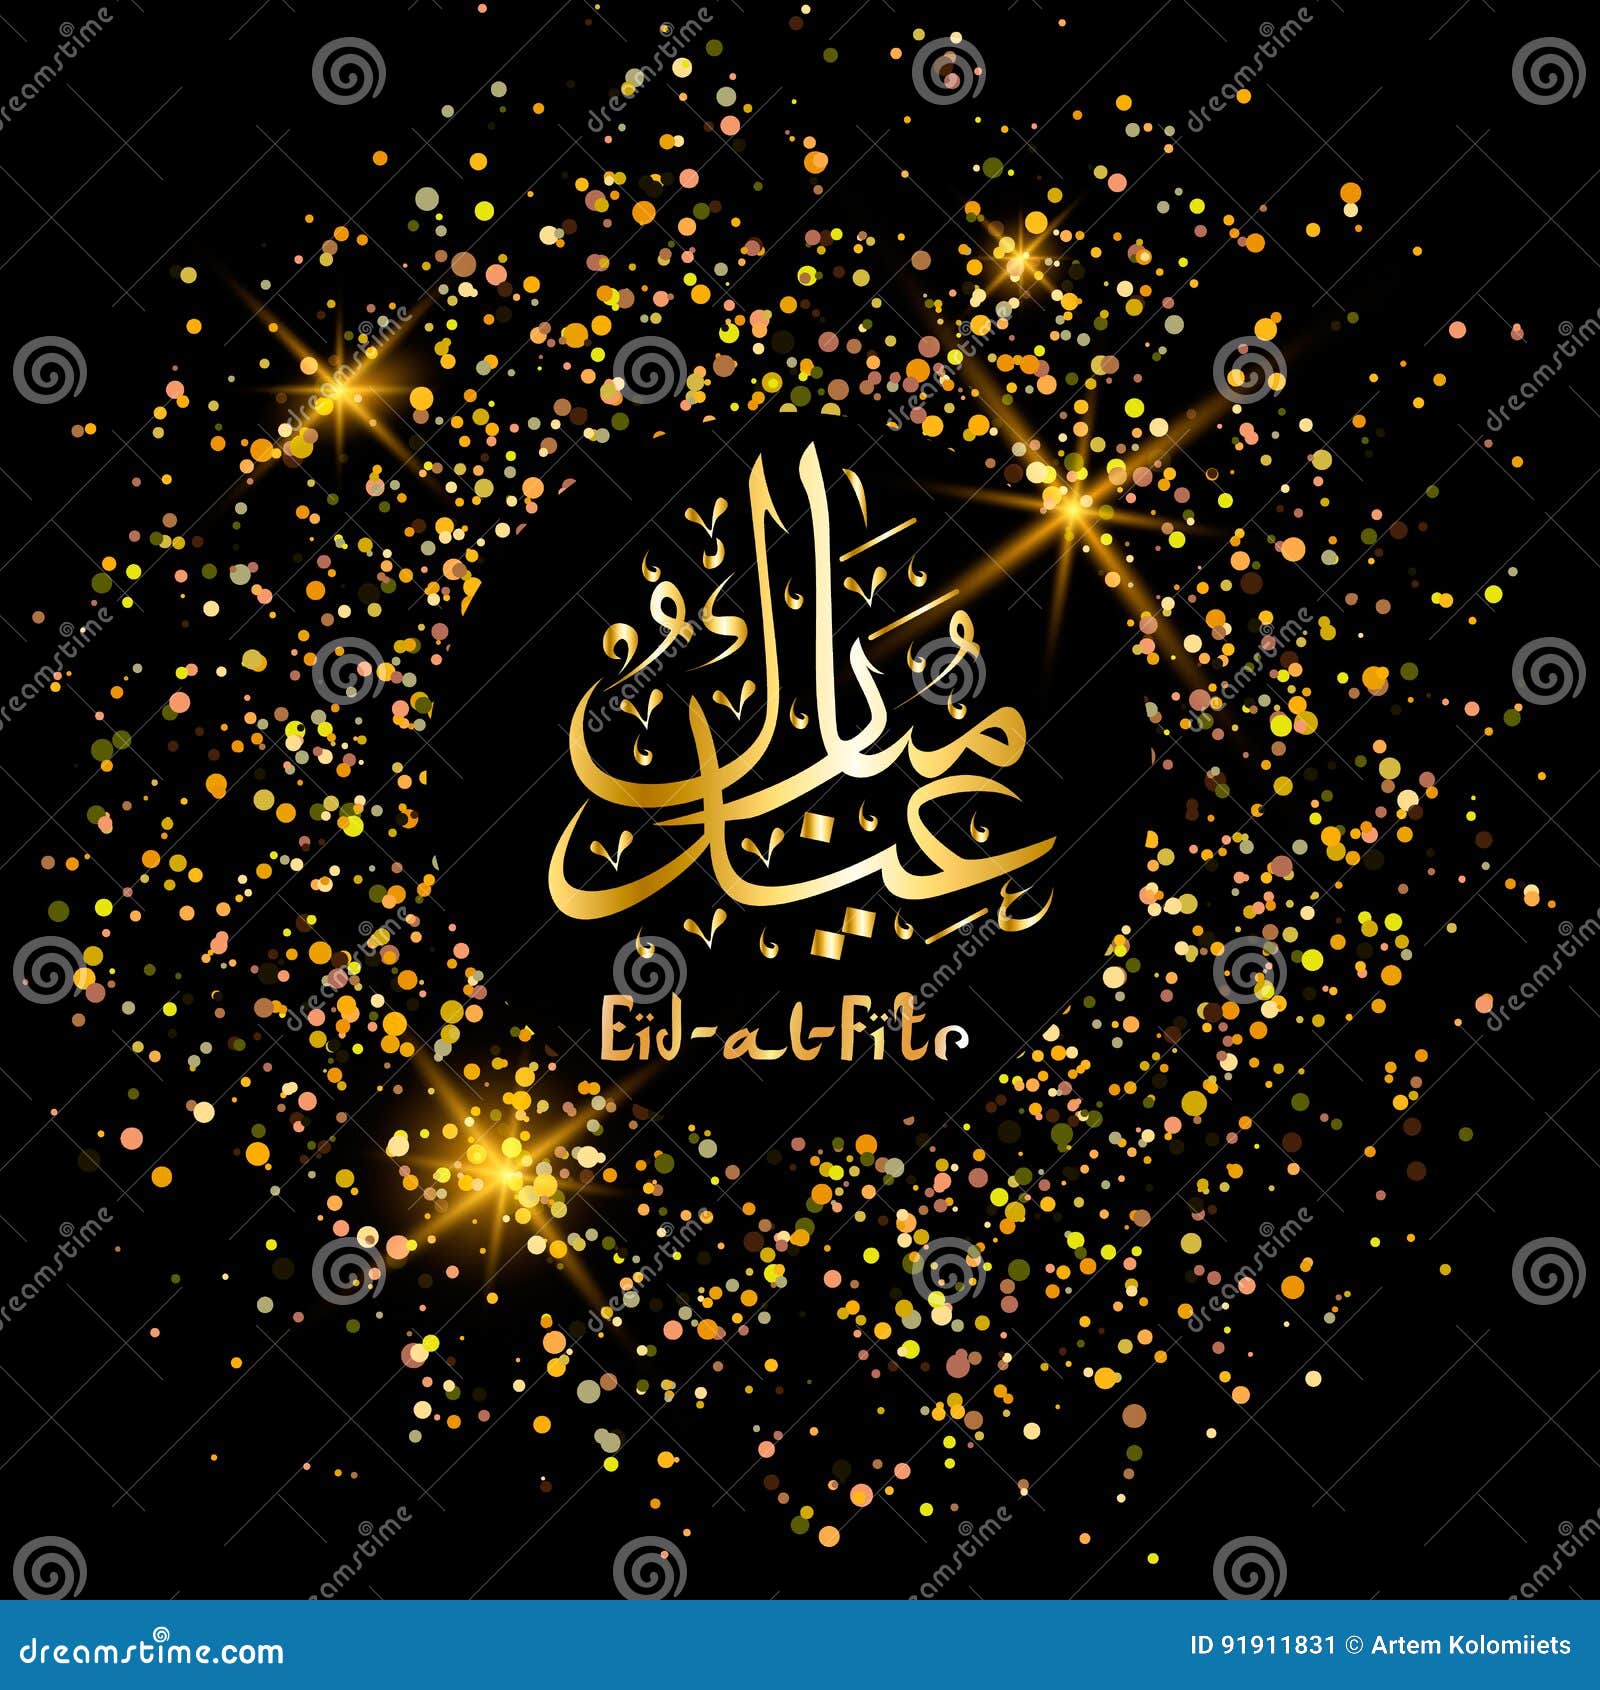 eid al fitr greeting card. arabic lettering translates as eid al-adha feast of sacrifice.